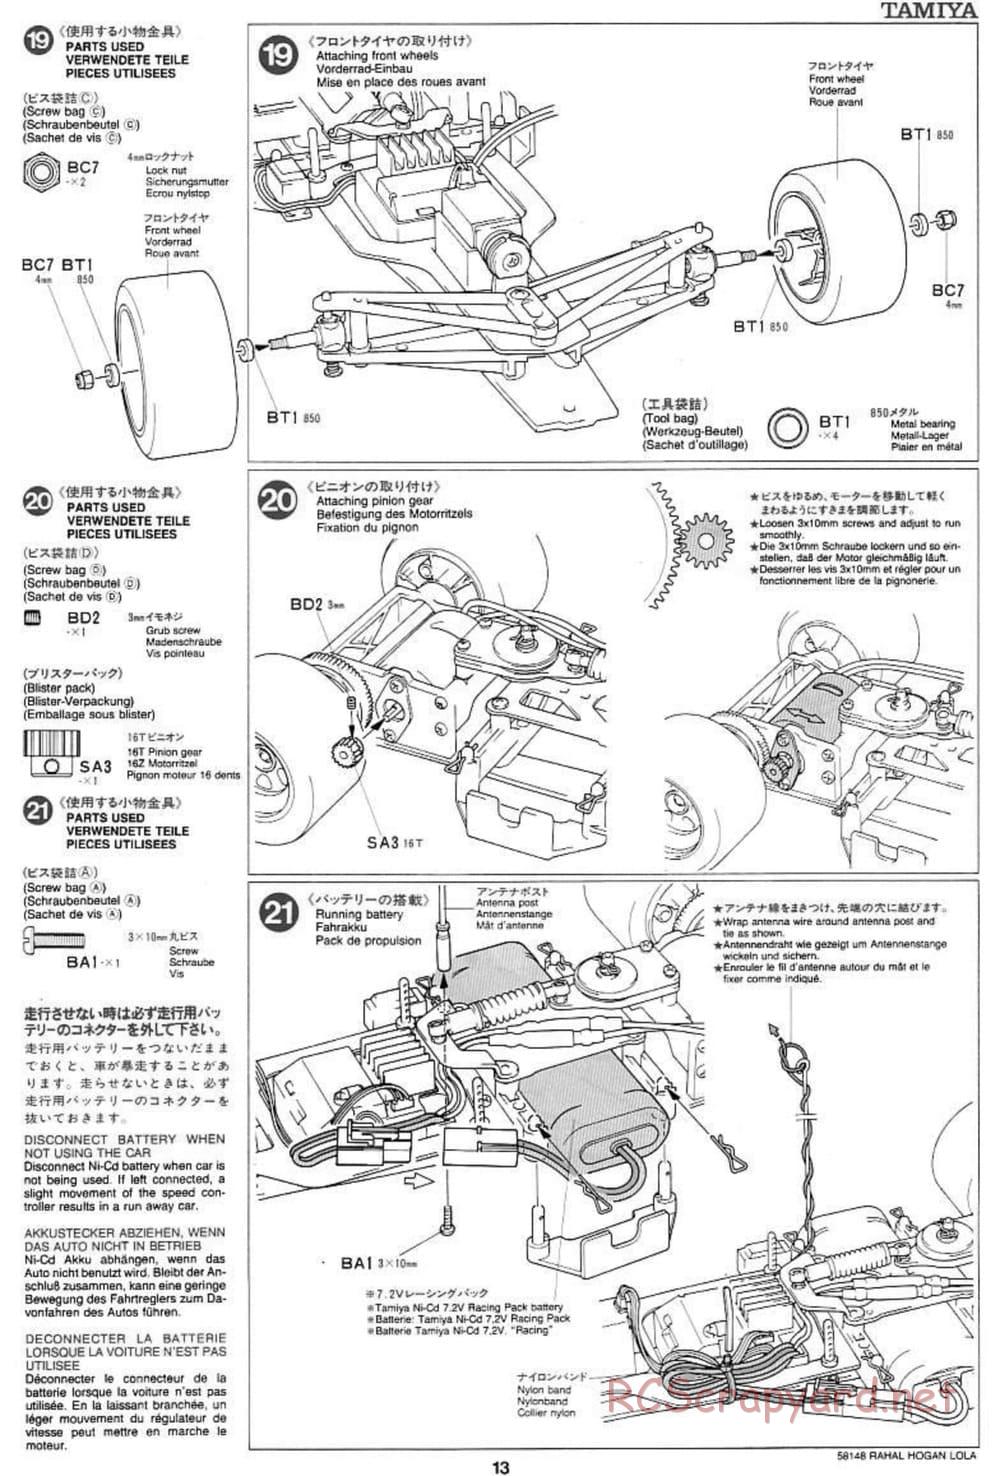 Tamiya - Rahal-Hogan Motorola Lola T94/00 Honda - F103L Chassis - Manual - Page 13